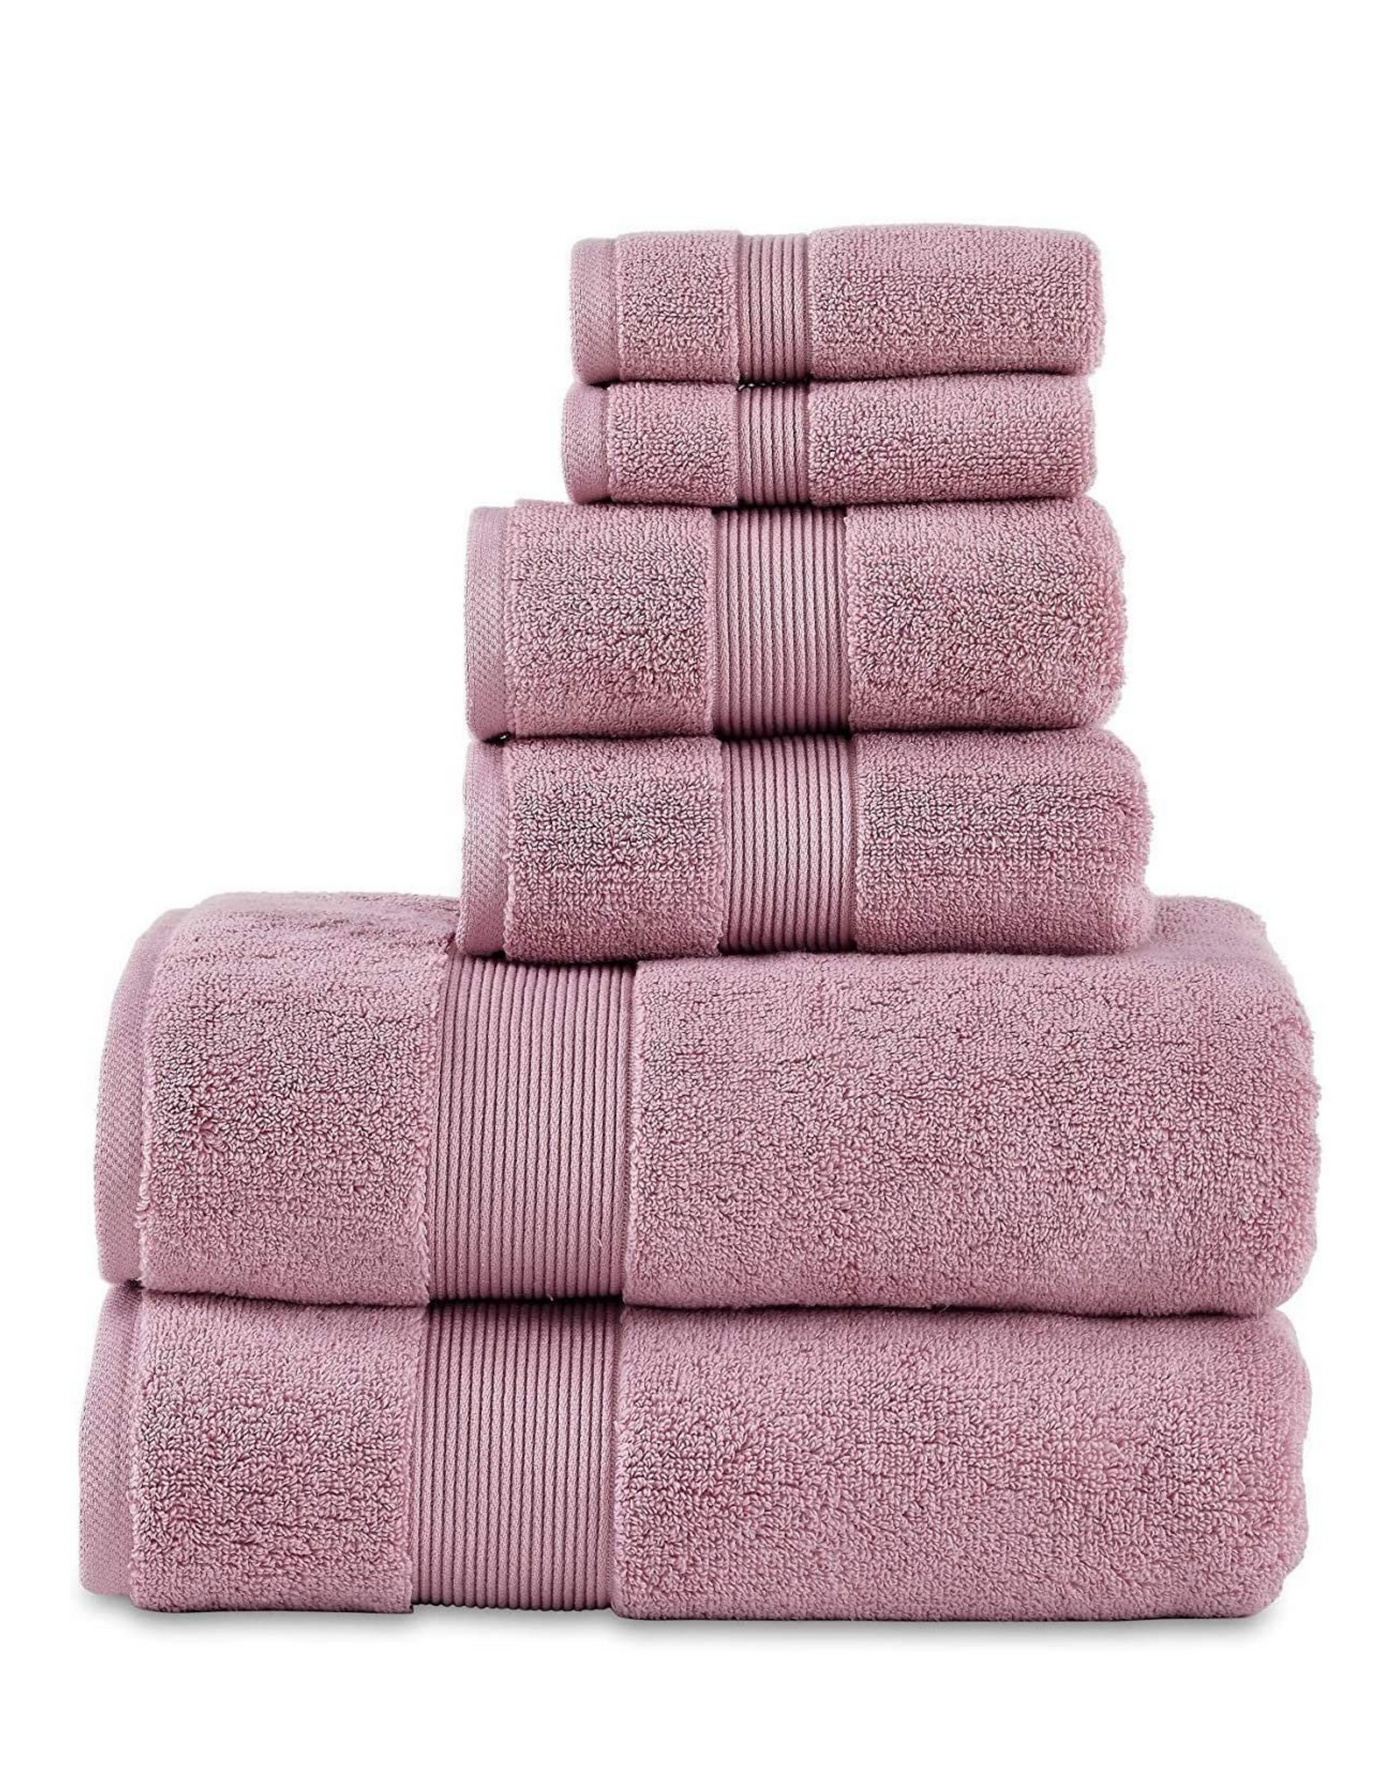 Soft Hotel Towels 6 Piece Set (Mauve)